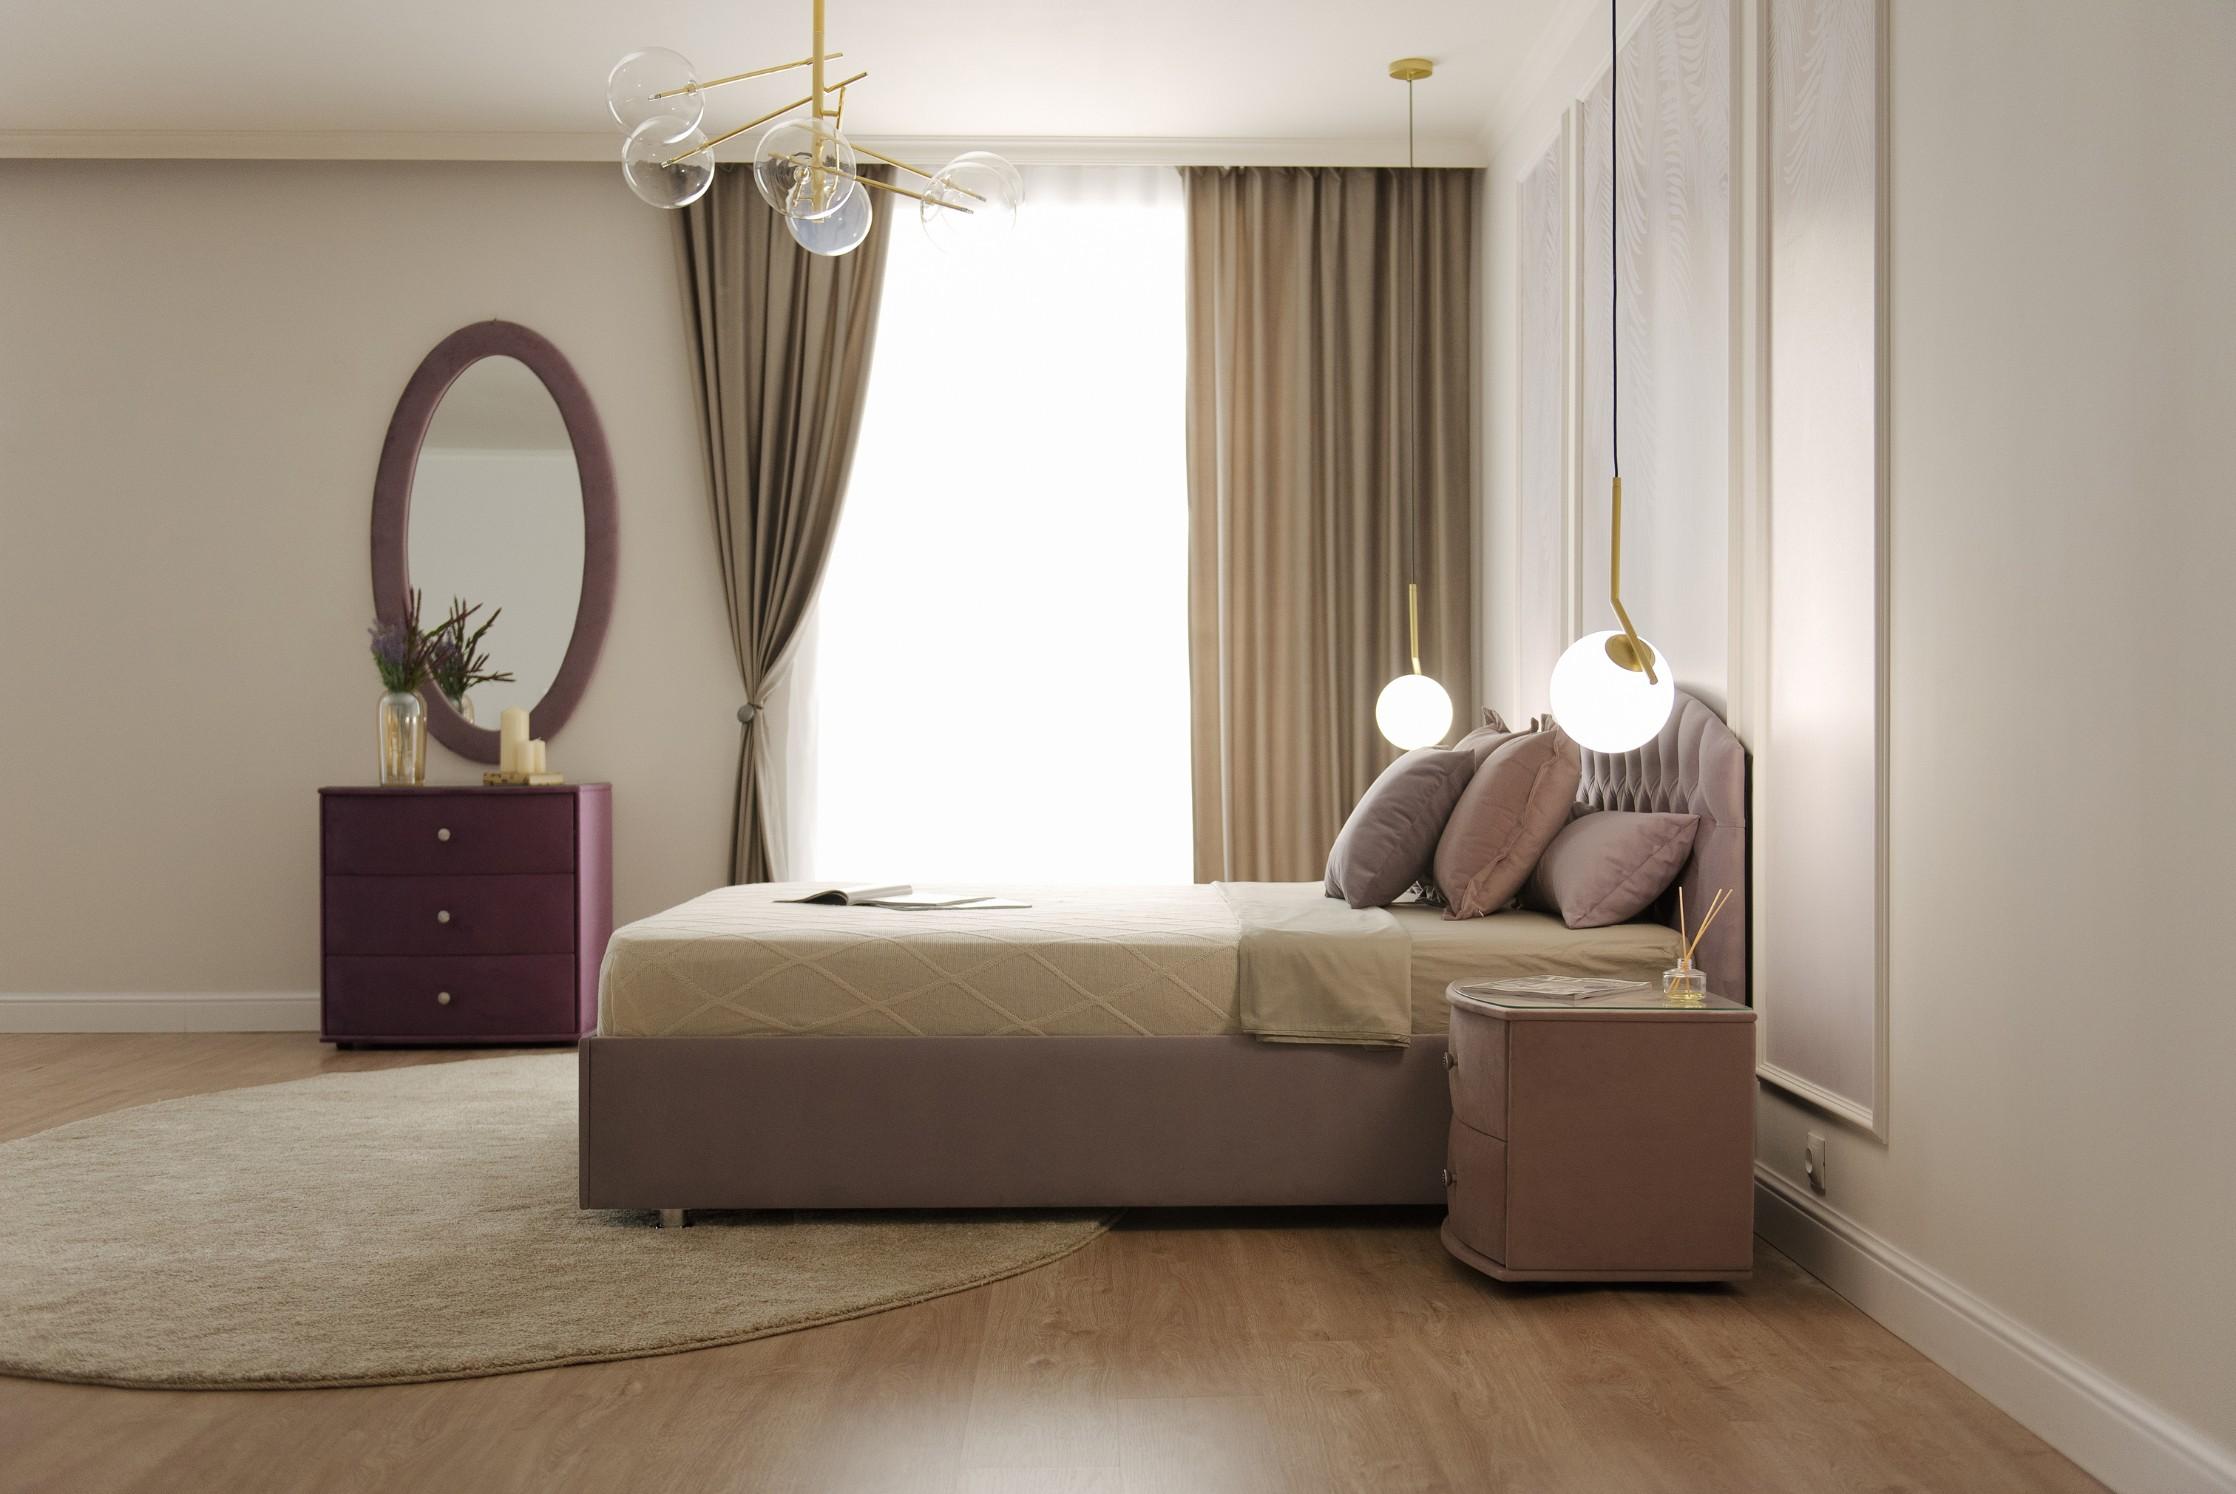 Купить Кровать Пальмира от производителя “Архитектория” фото №2